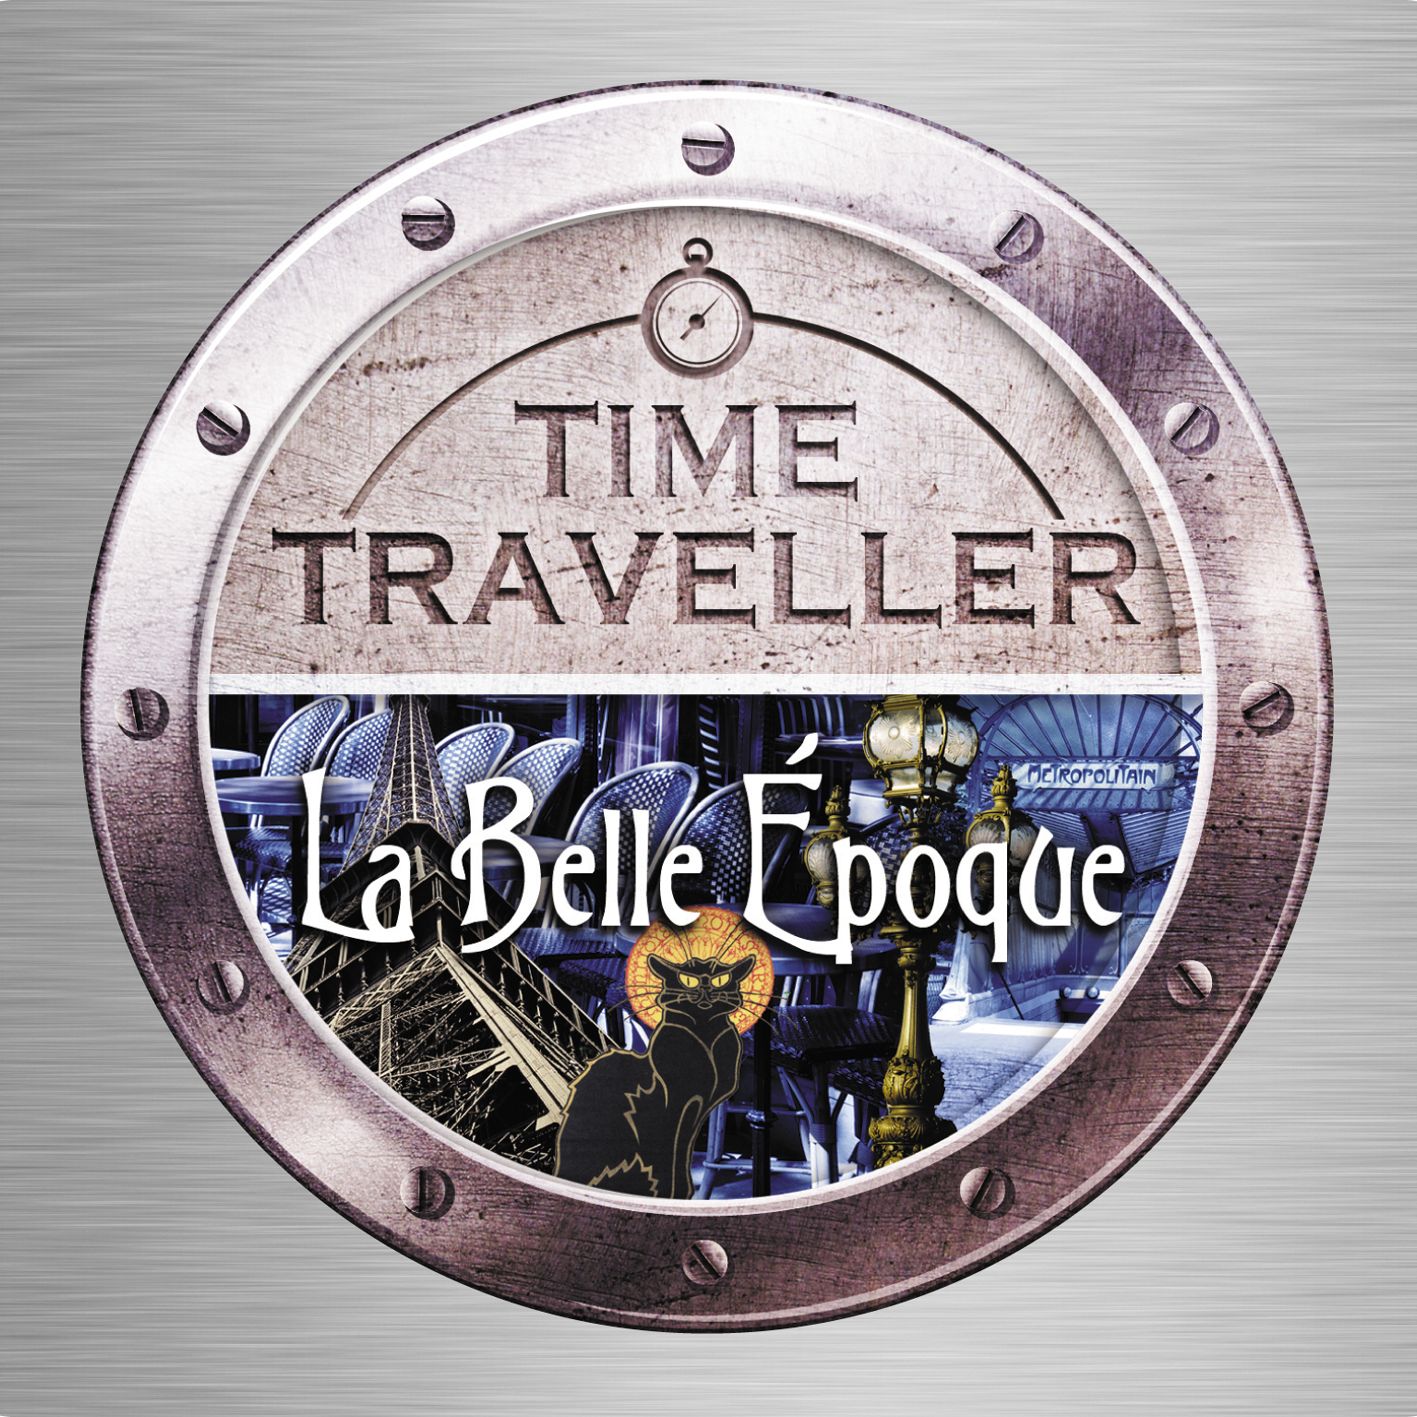 Time Traveller: La Belle Epoque